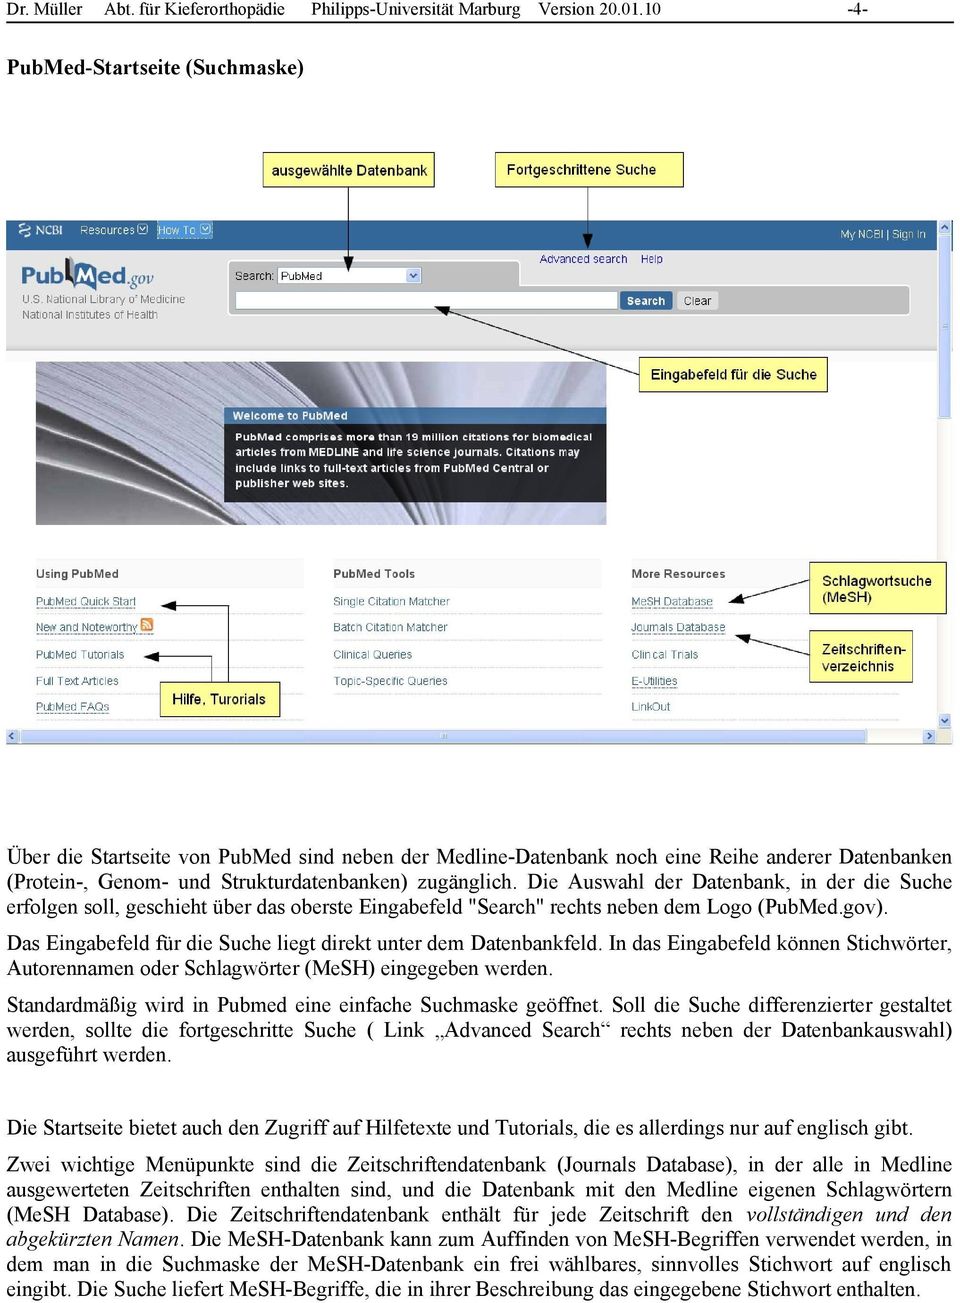 Die Auswahl der Datenbank, in der die Suche erfolgen soll, geschieht über das oberste Eingabefeld "Search" rechts neben dem Logo (PubMed.gov).